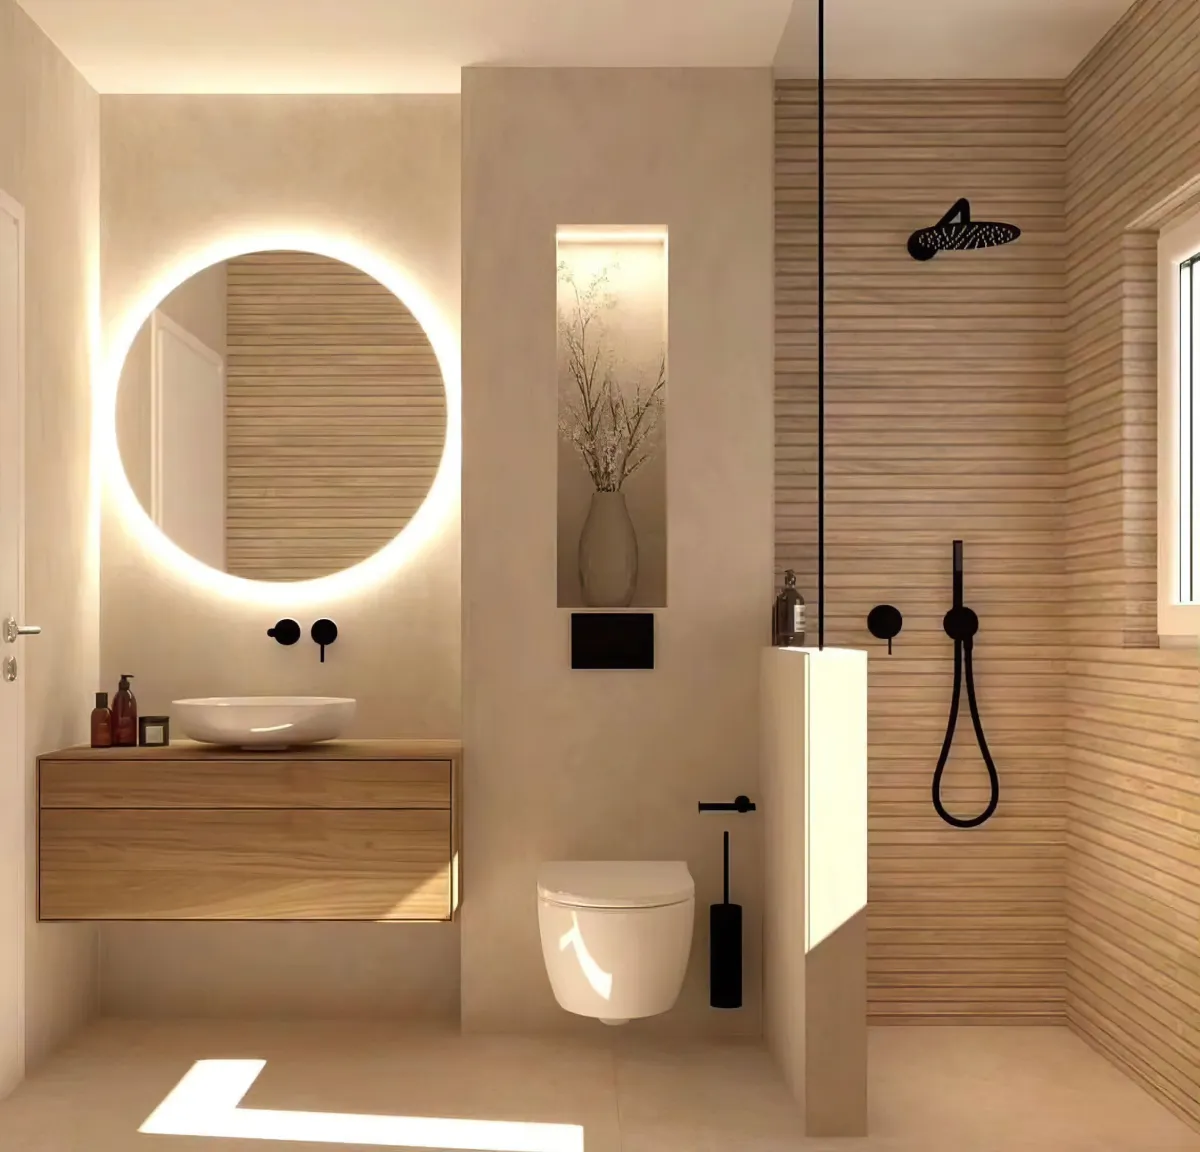 salle de bain beige et bois elements en noir